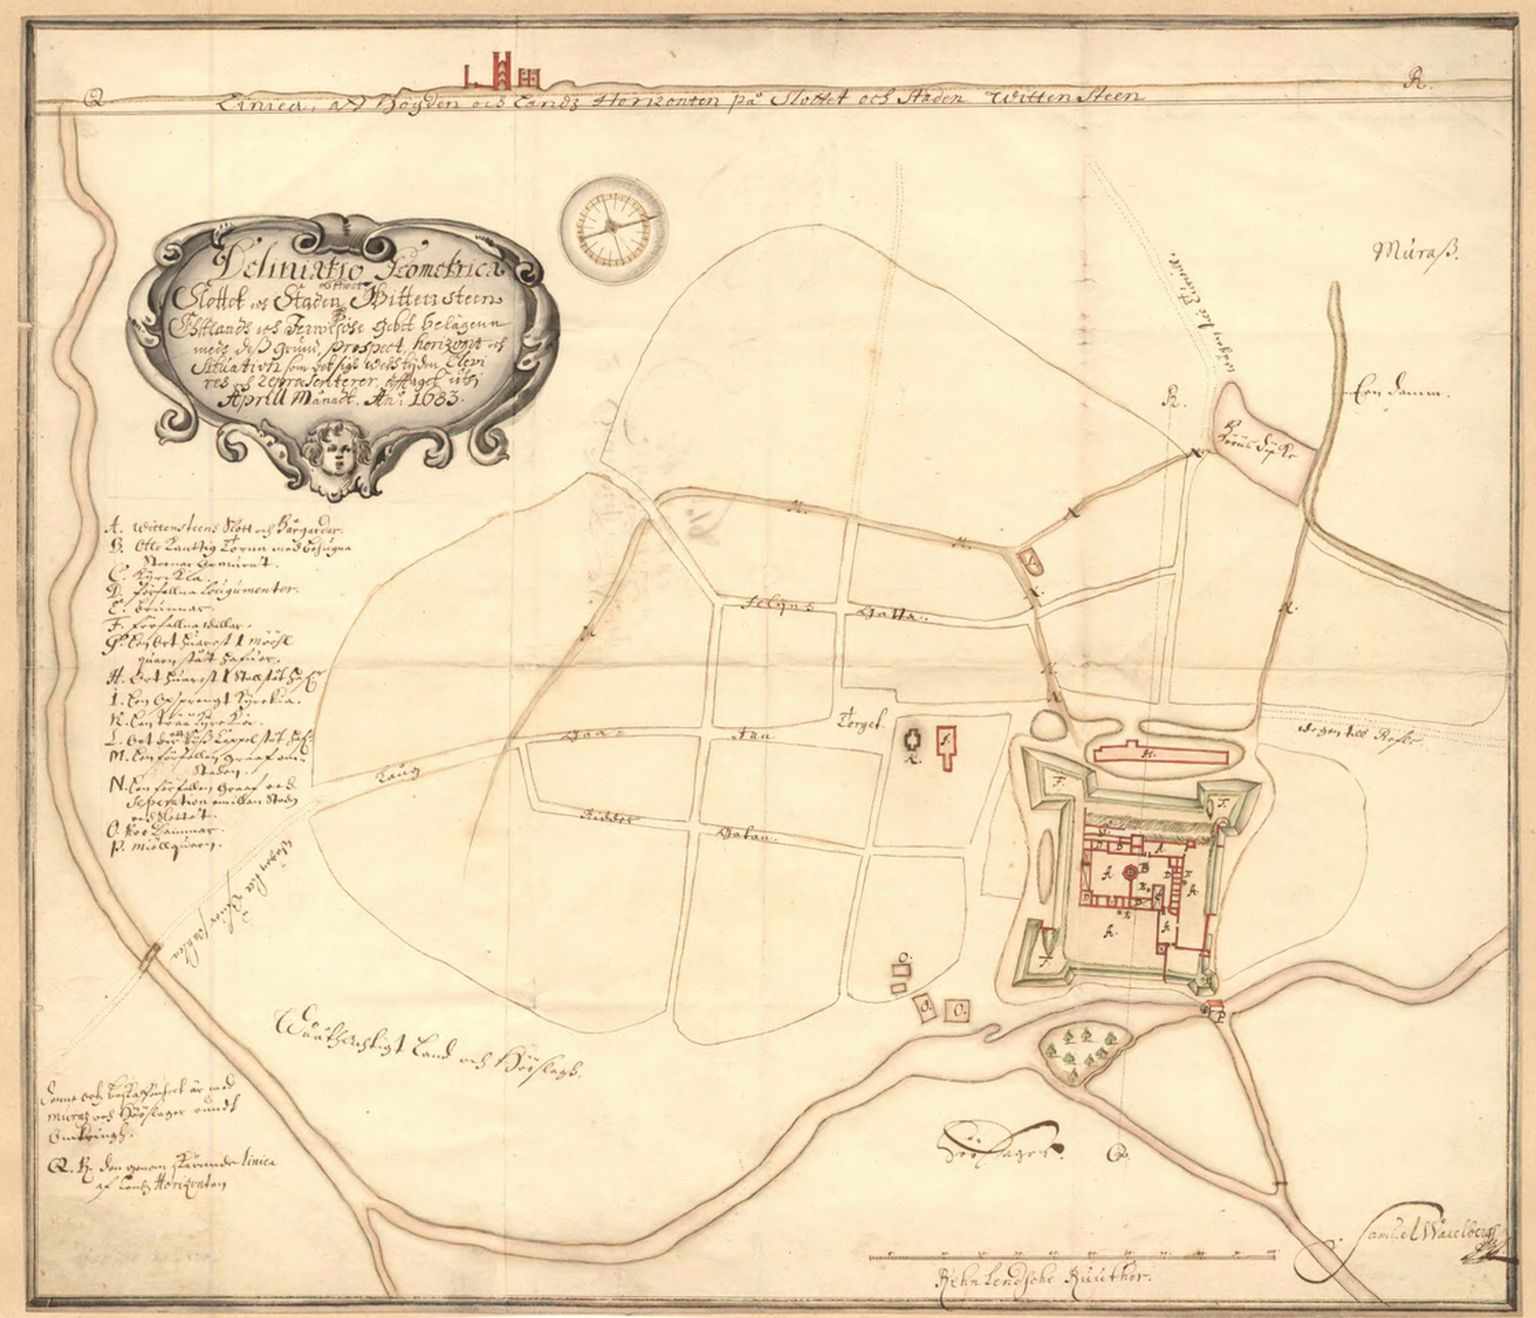 Paide linn 1683. aasta S. Waxelbergi kaardil. Rahvusarhiivis hoiul olevalt kaardilt on näha linnust ja vallikraavi, lisaks linna tänavate võrgustikku, mis on suuresti tänapäevani säilinud.